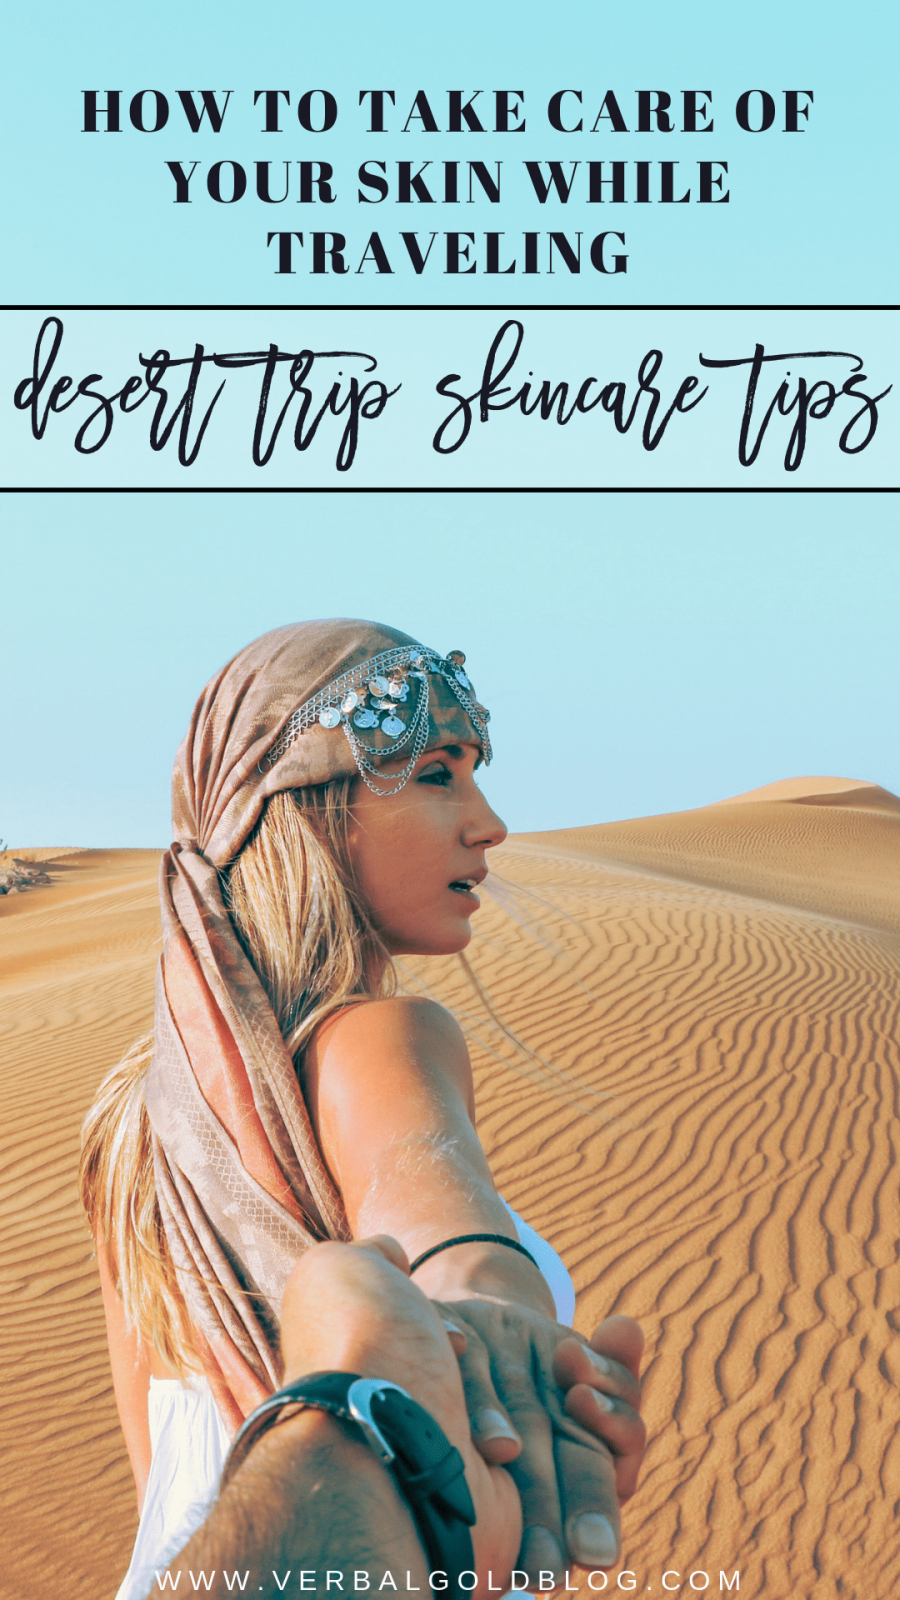 DESERT TRIP skincare tips